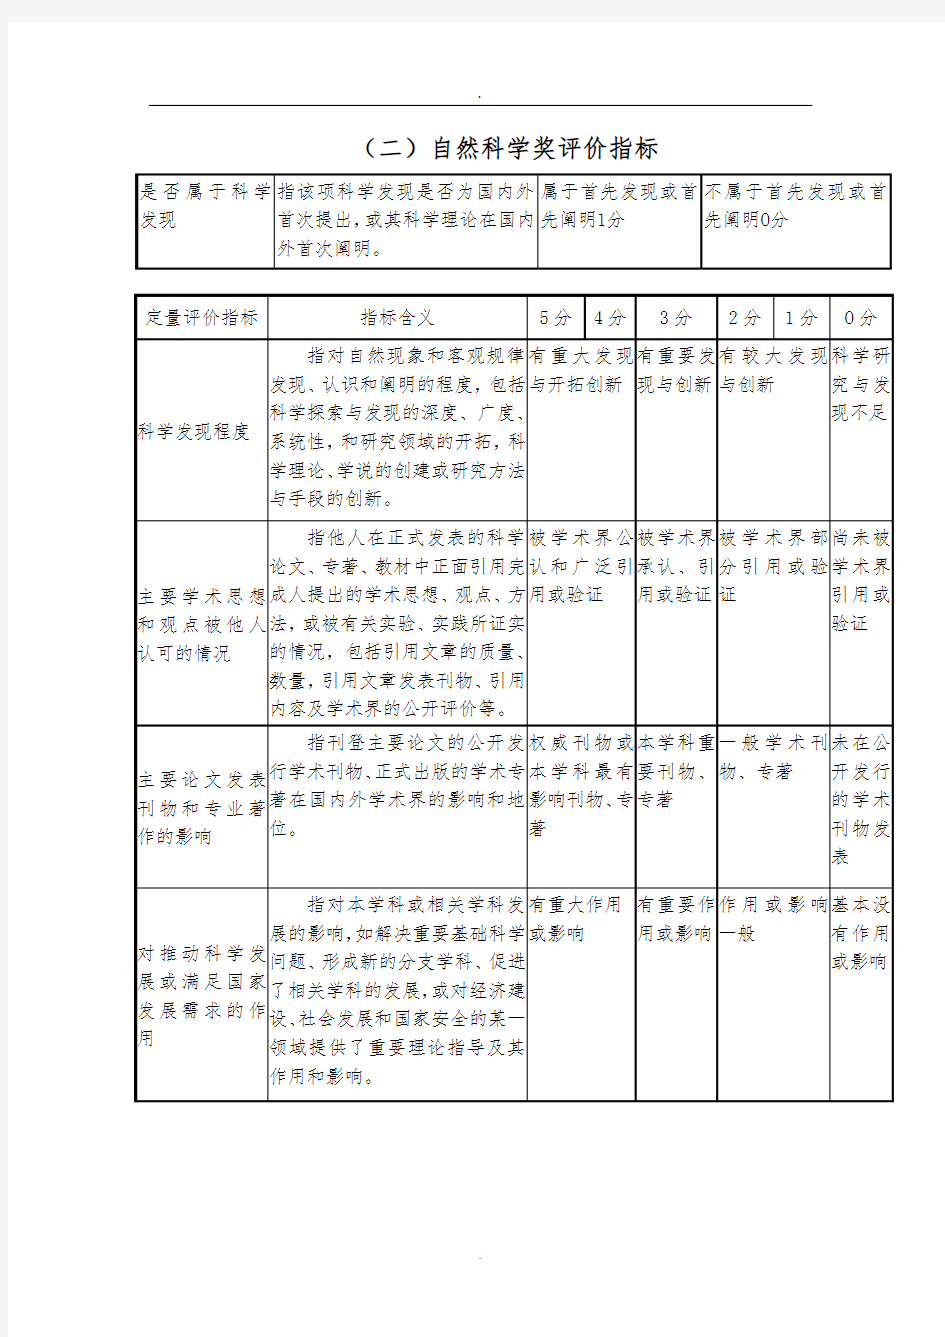 重庆科技项目评价标准